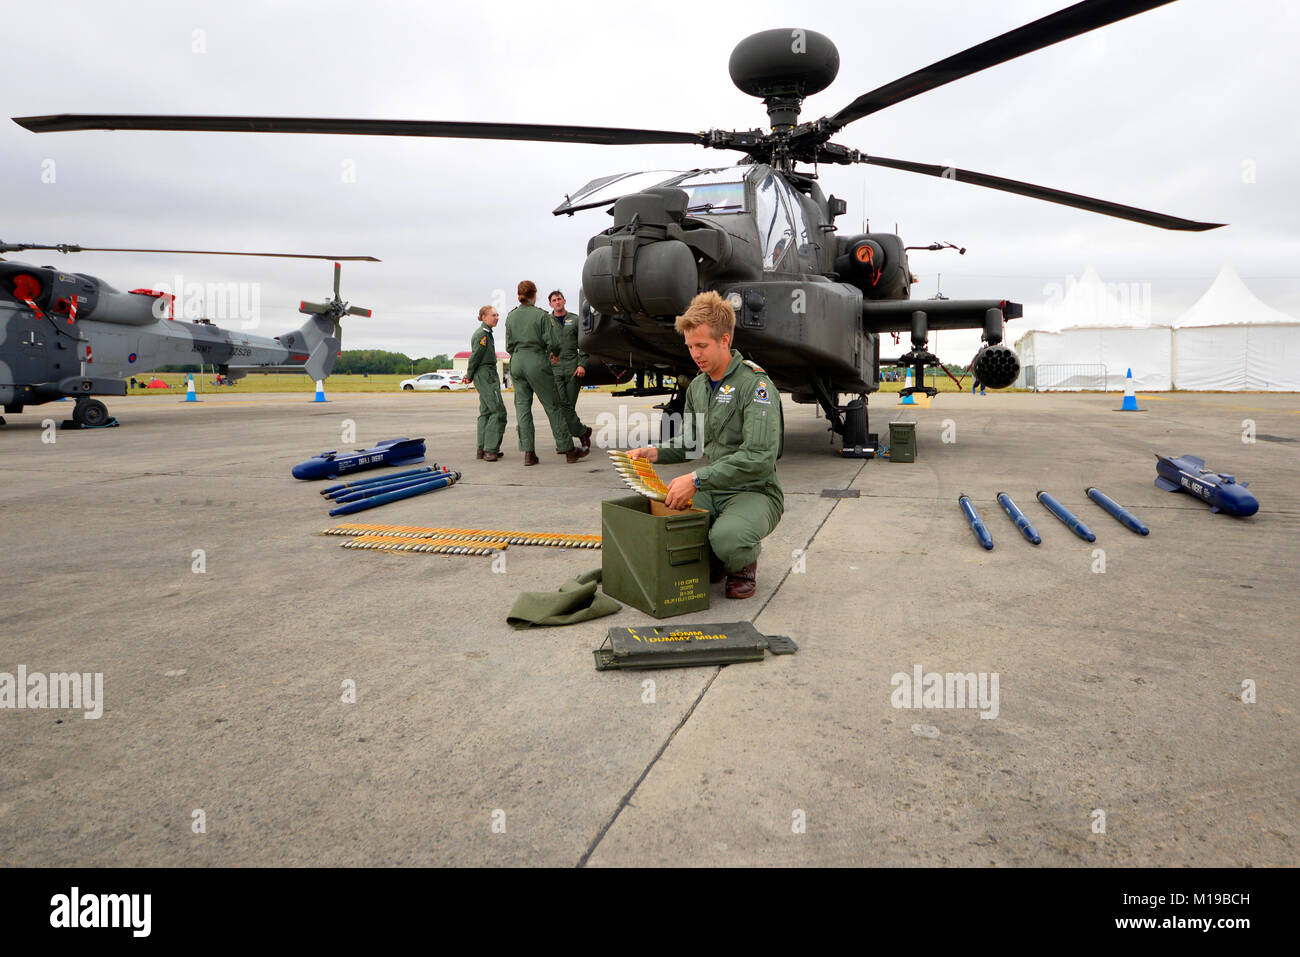 Armée britannique AH-64 fusil Apache avec des fusils de chargement de crawman dans une boîte de munitions. Armes. Industrie de la défense. Personnel militaire, équipage Banque D'Images